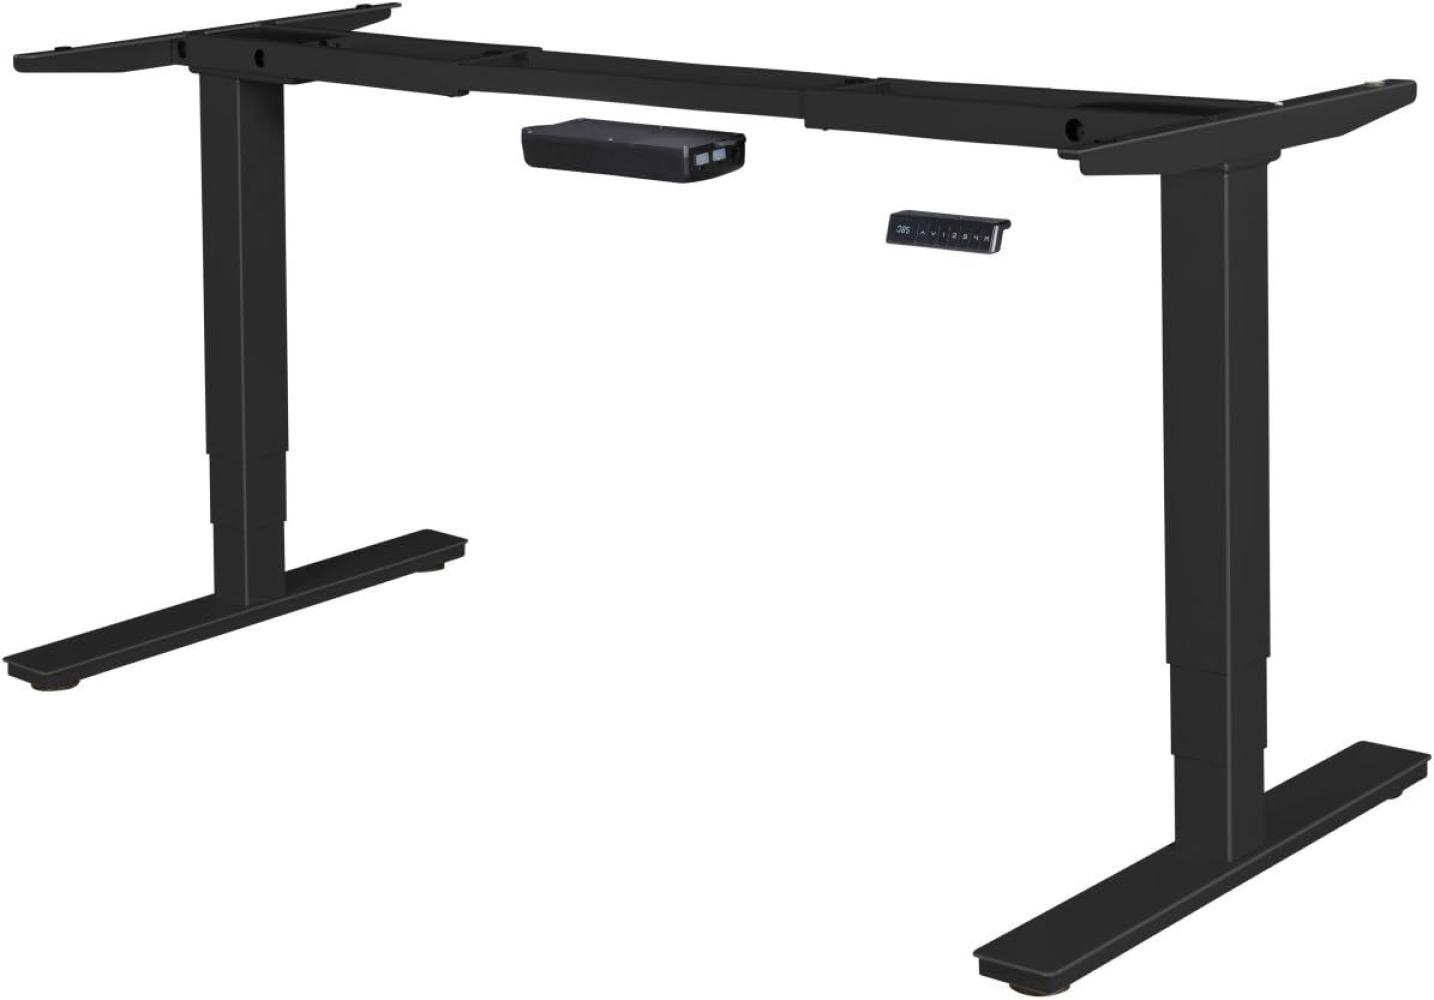 Elektrisch höhenverstellbares Schreibtischgestell mit Memory Funktion, schwarz Bild 1